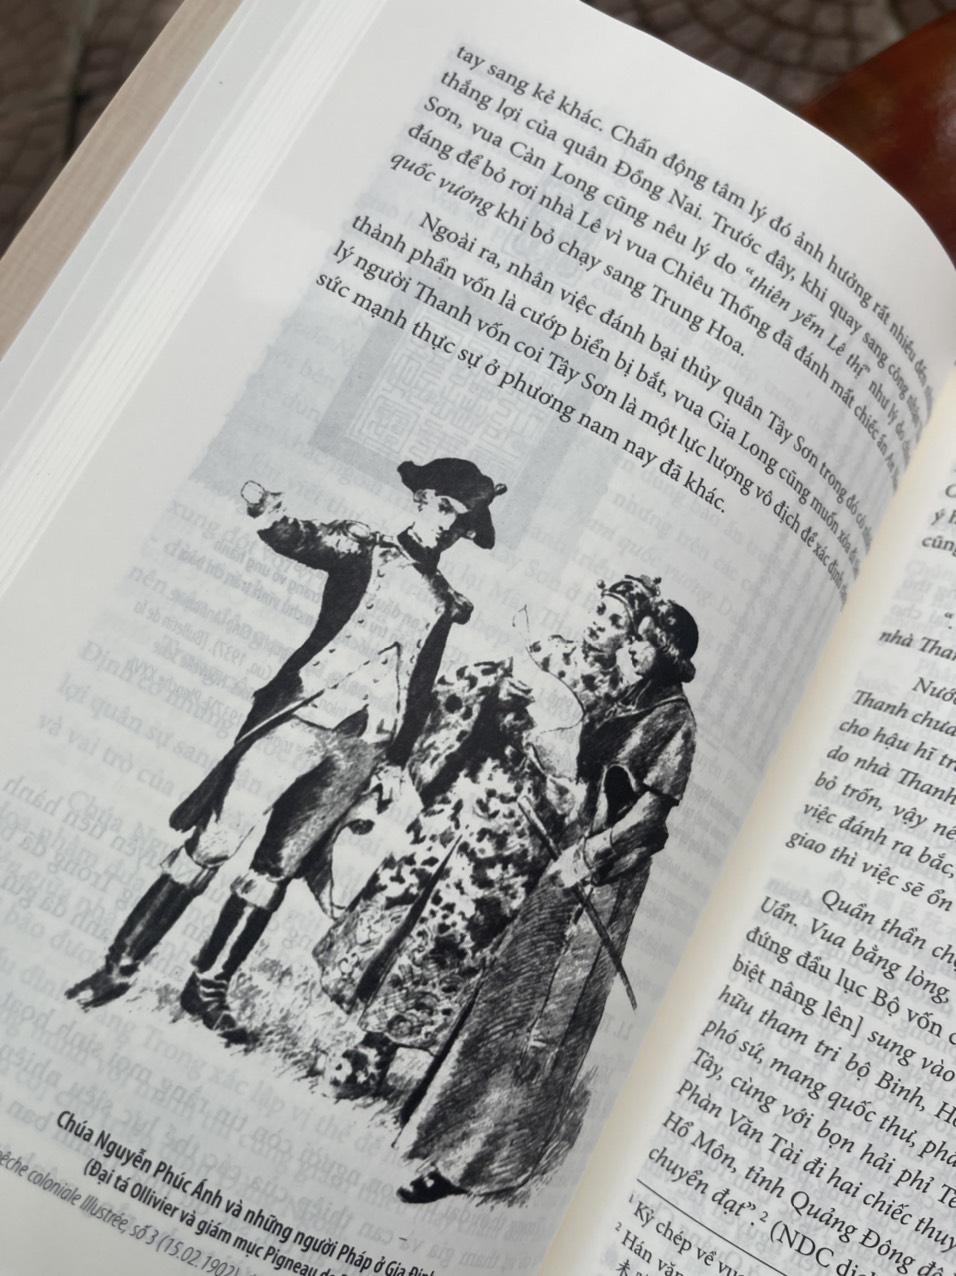 [Combo 2 cuốn bìa cứng] VIỆT NAM VÀ CUỘC CHIẾN TRUNG PHÁP - BANG GIAO VIỆT - THANH THẾ KỶ XIX – Long Chương – Nguyễn Duy Chính – Tao Đàn Thu Quán